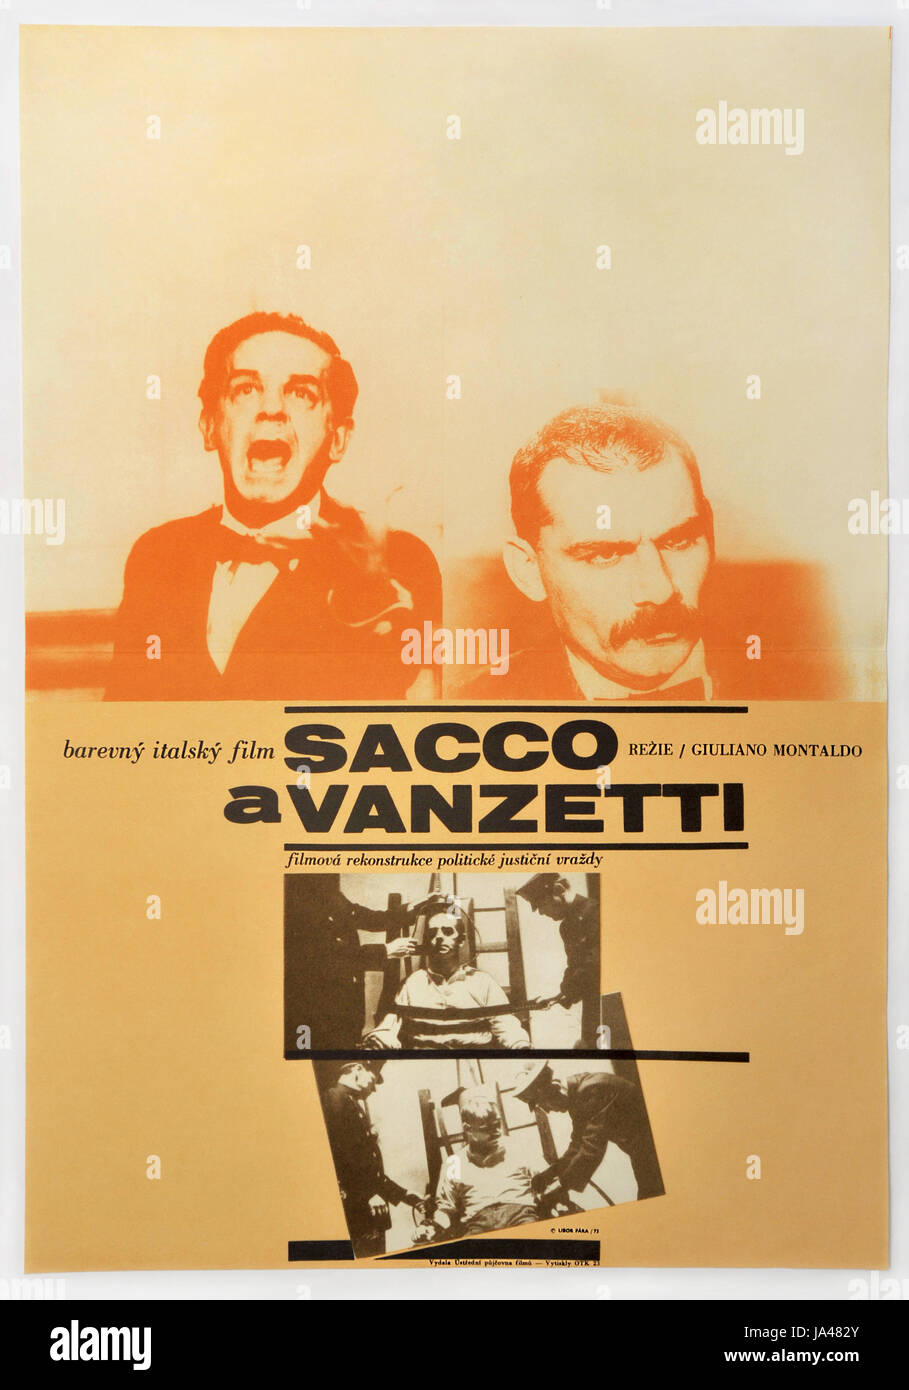 Sacco und Vanzetti. Tschechoslowakische Filmplakat für das italienische Drama mit Gian Maria Volonte. 1971. Stockfoto